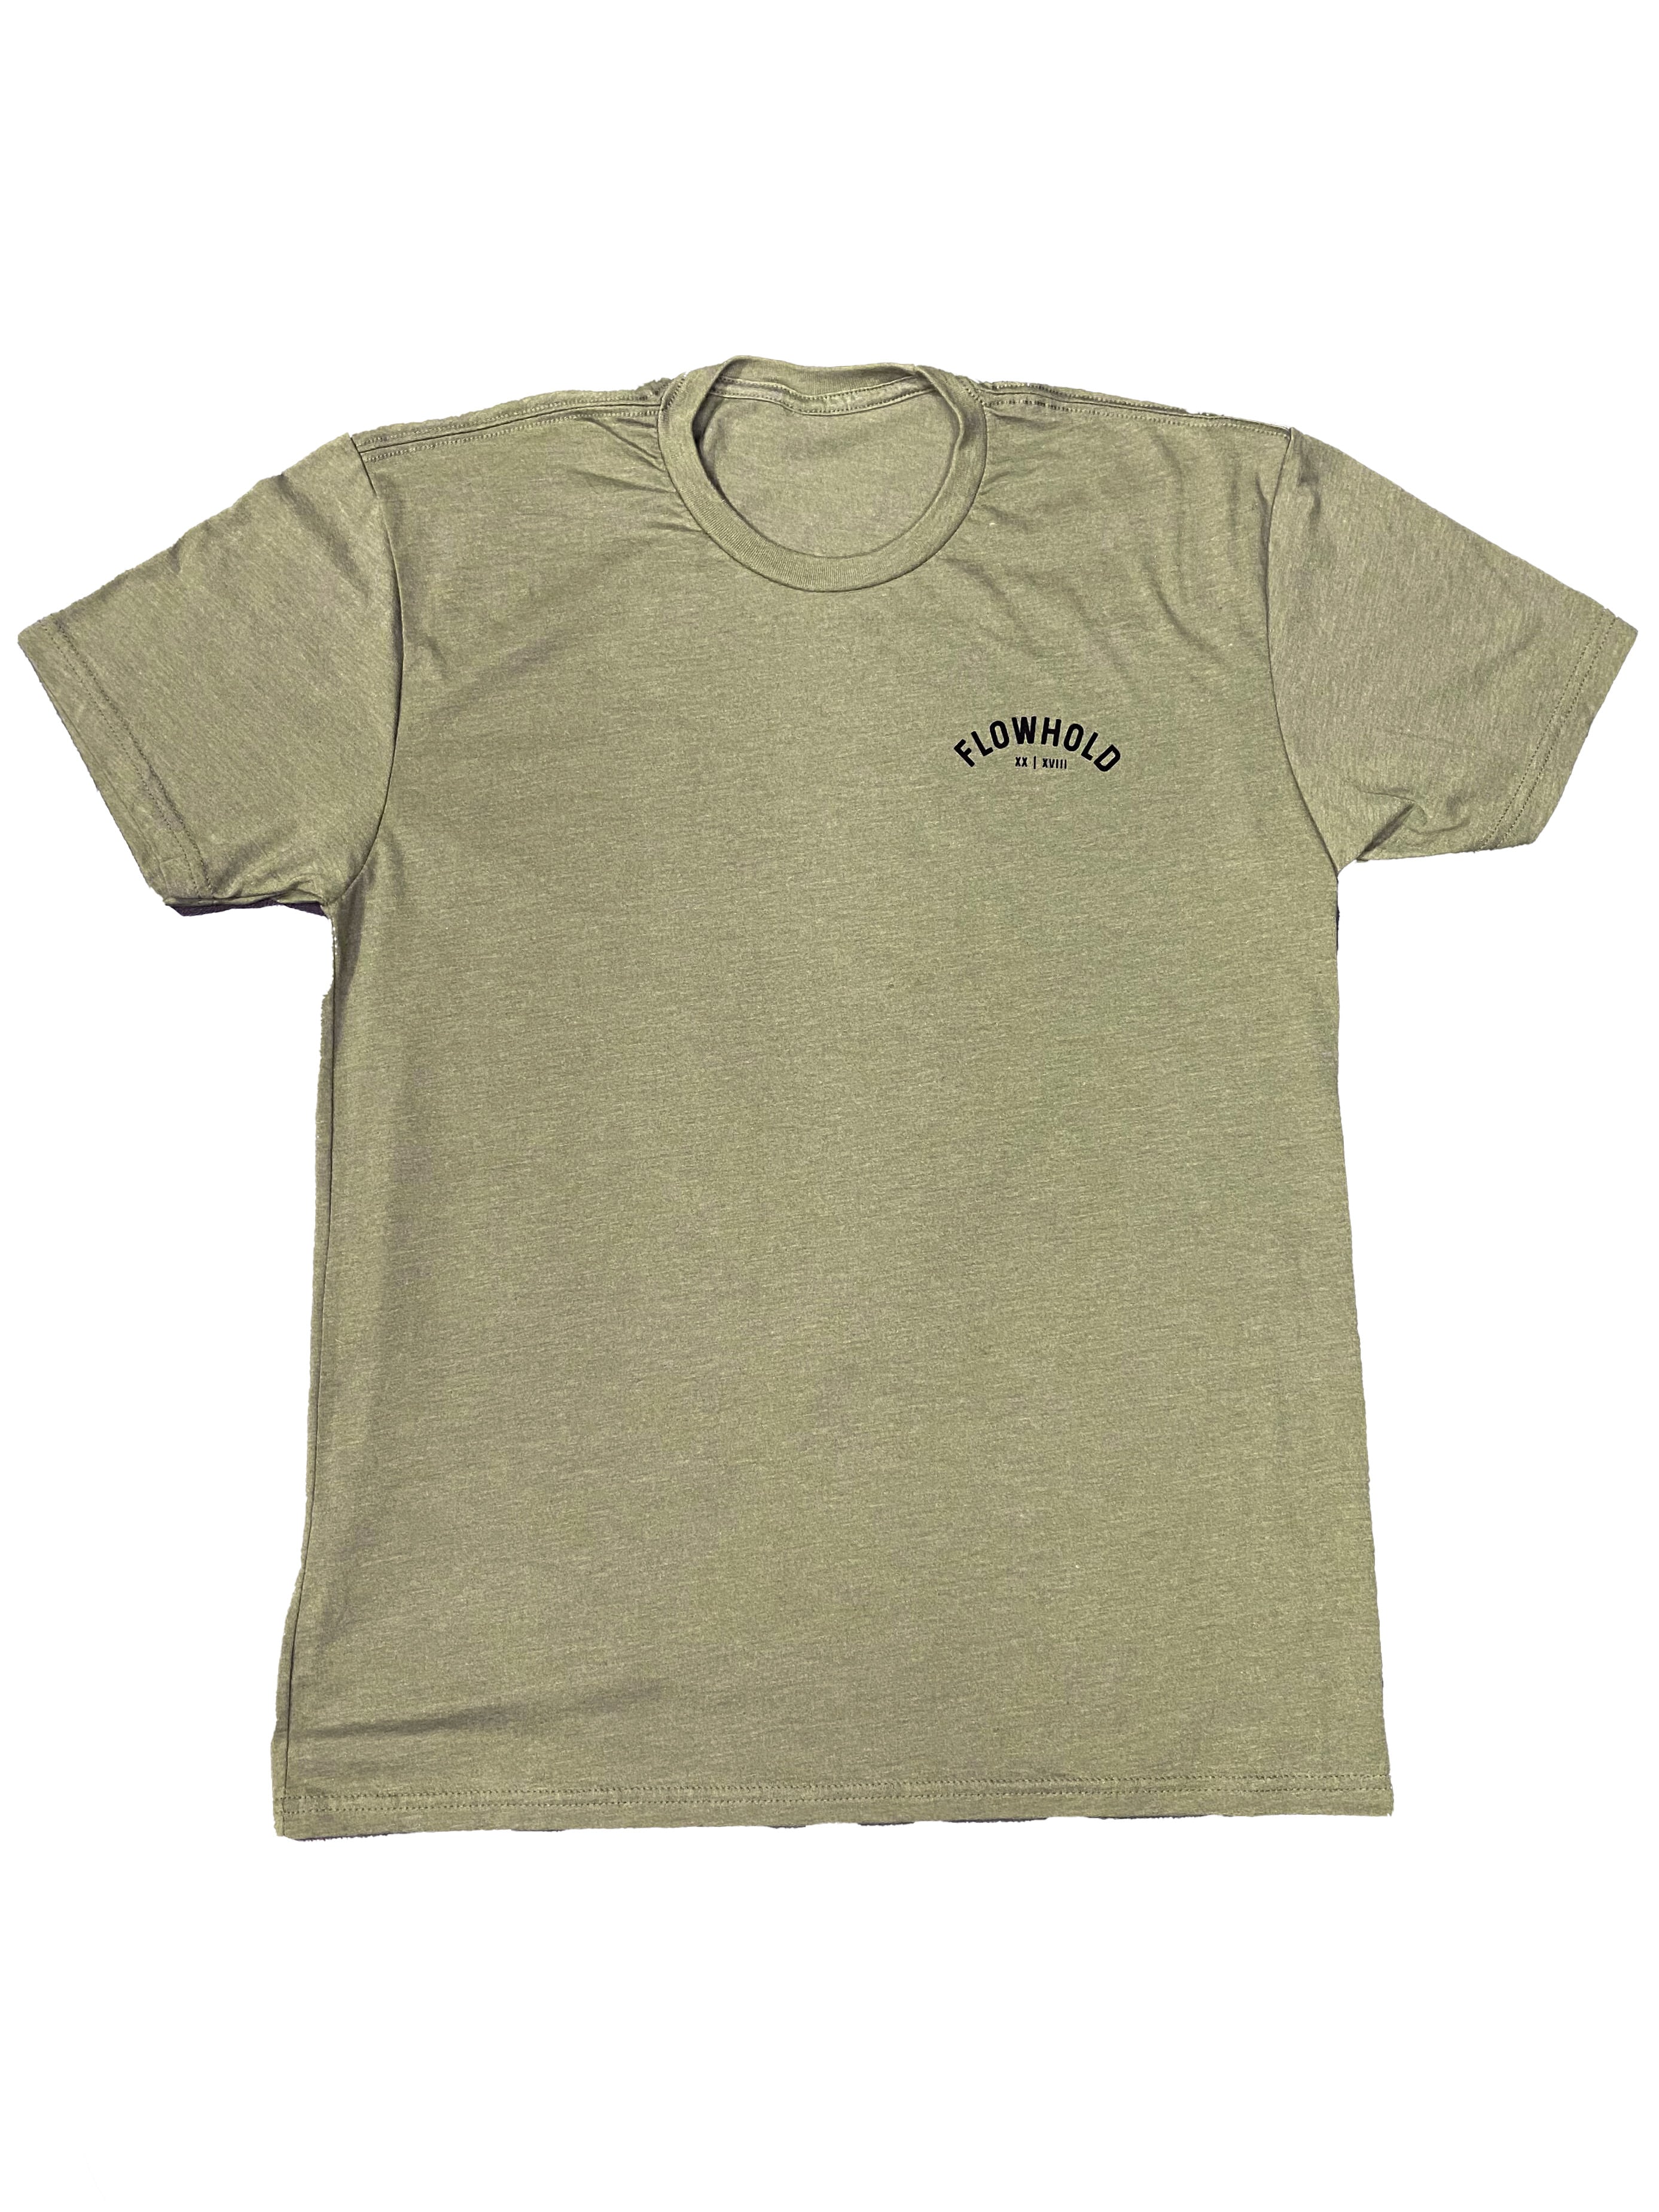 Flowhold T-Shirt (Light Olive) V2